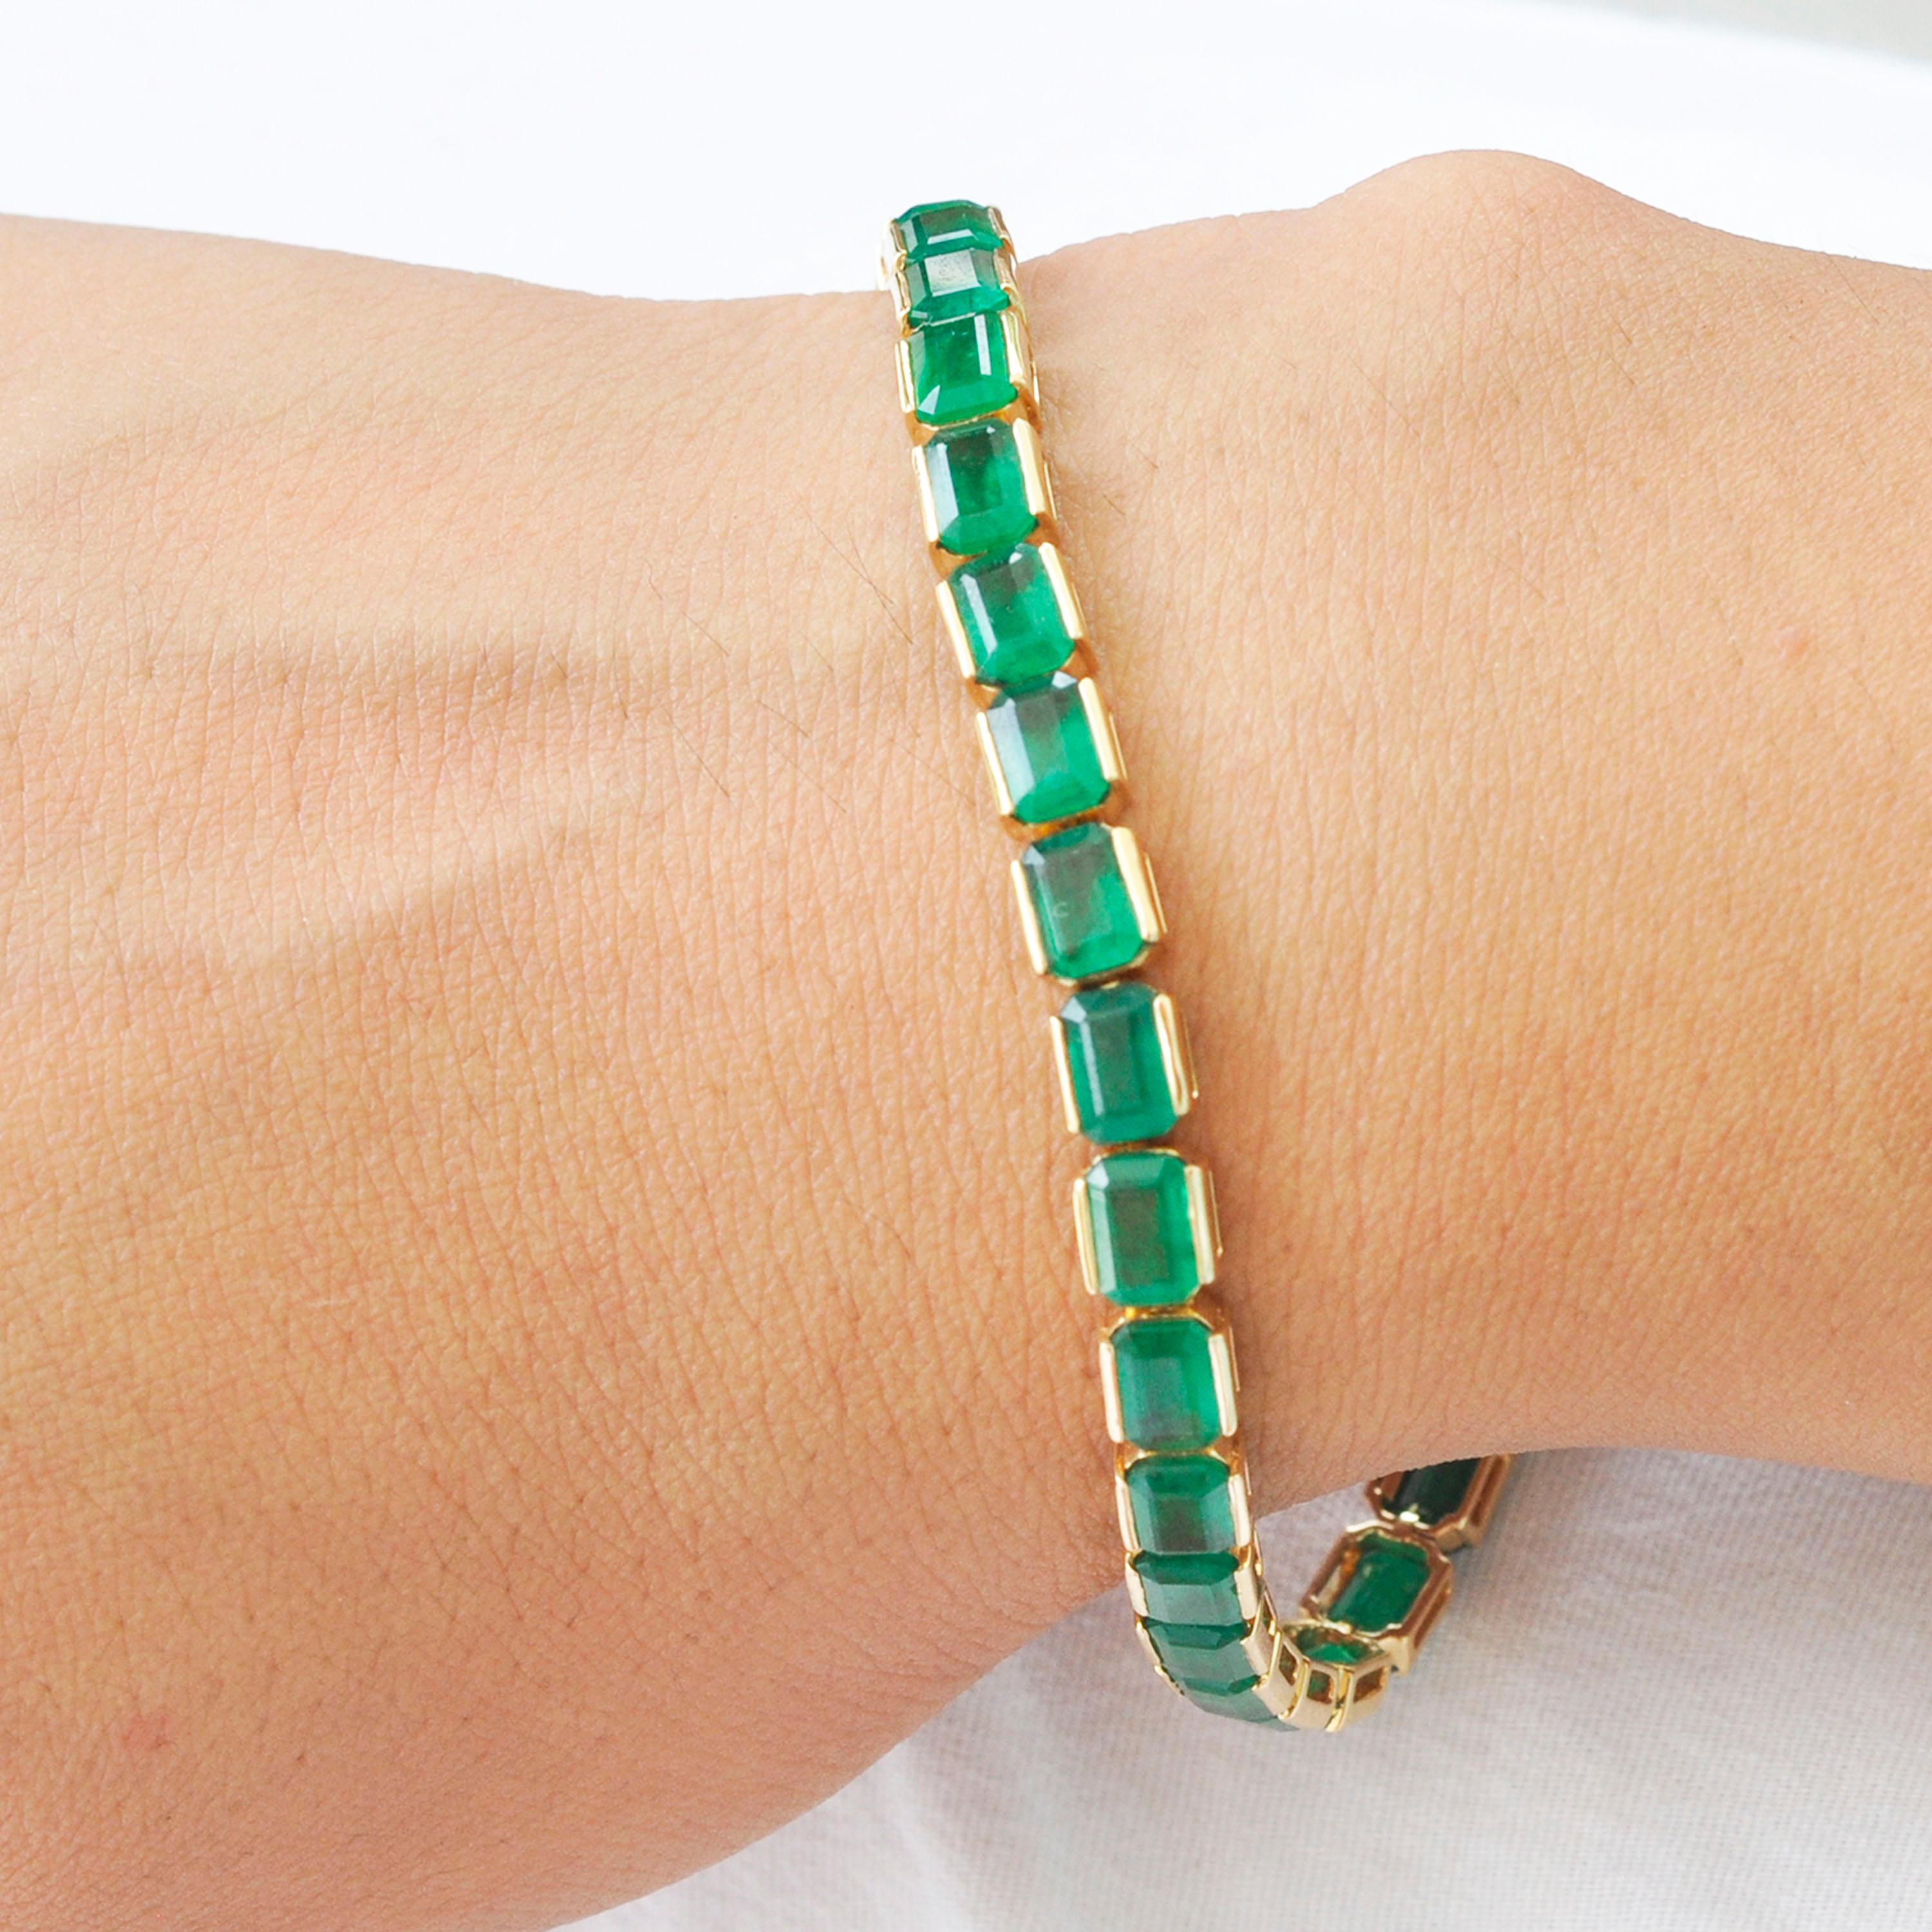 Le bracelet ligne de tennis en or 18 carats 16,97 carats octogone d'émeraude brésilienne est un chef-d'œuvre de haute joaillerie qui respire le luxe et l'élégance. Ce bracelet présente une étonnante collection d'émeraudes brésiliennes d'un vert vif